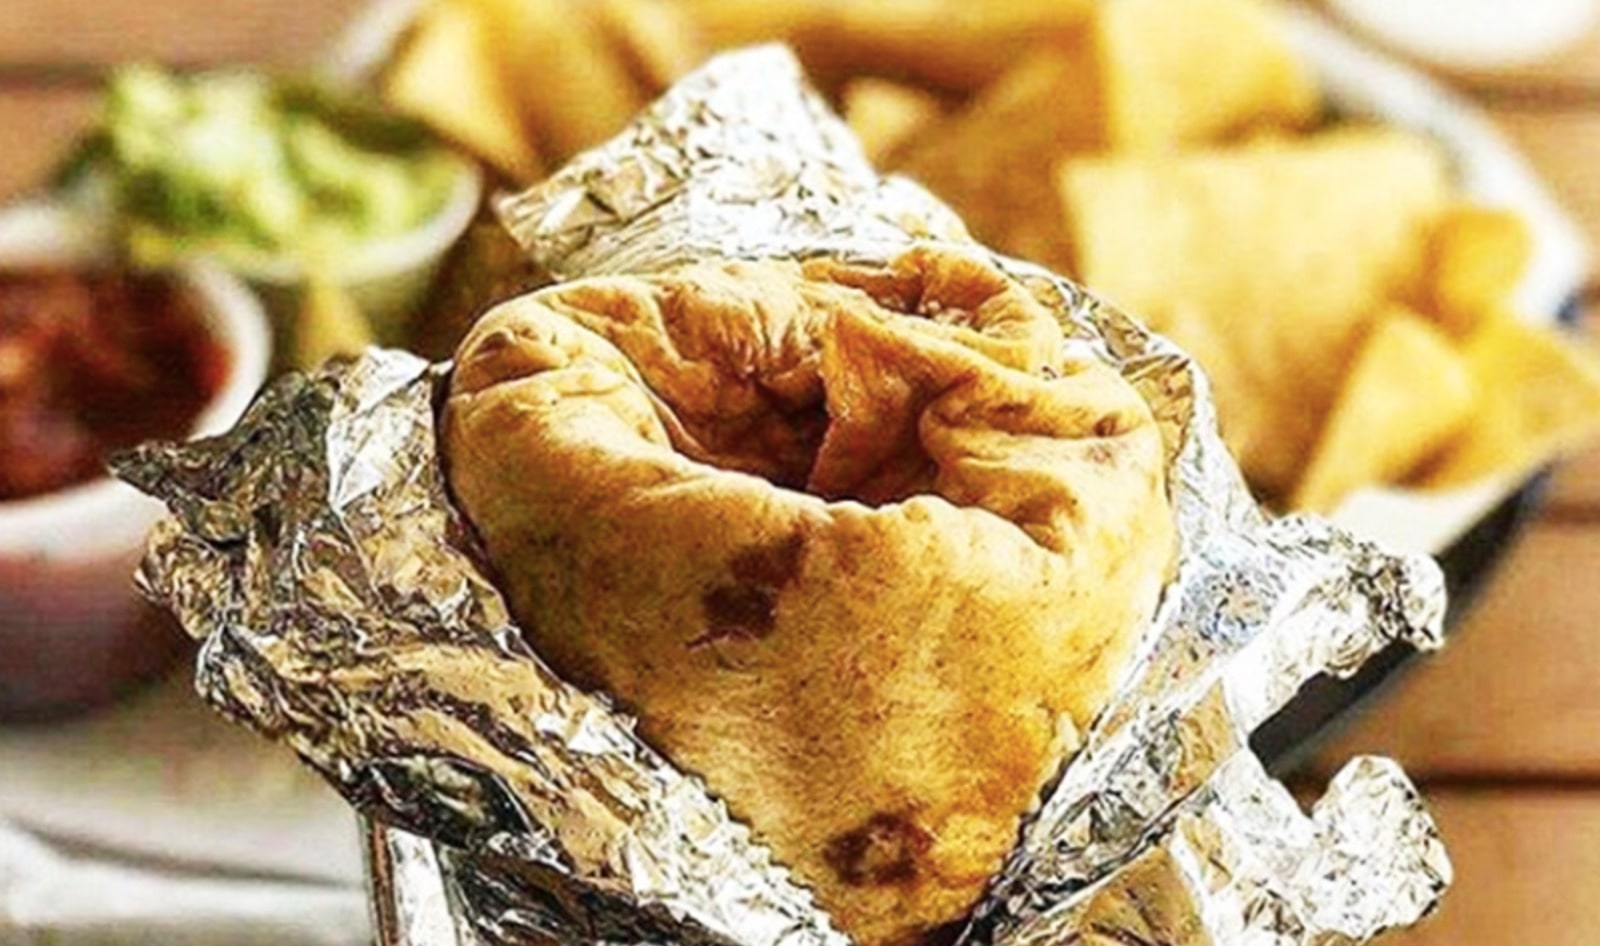 Restaurant Chain Now Serves Secret 8-Pound Vegan Burrito